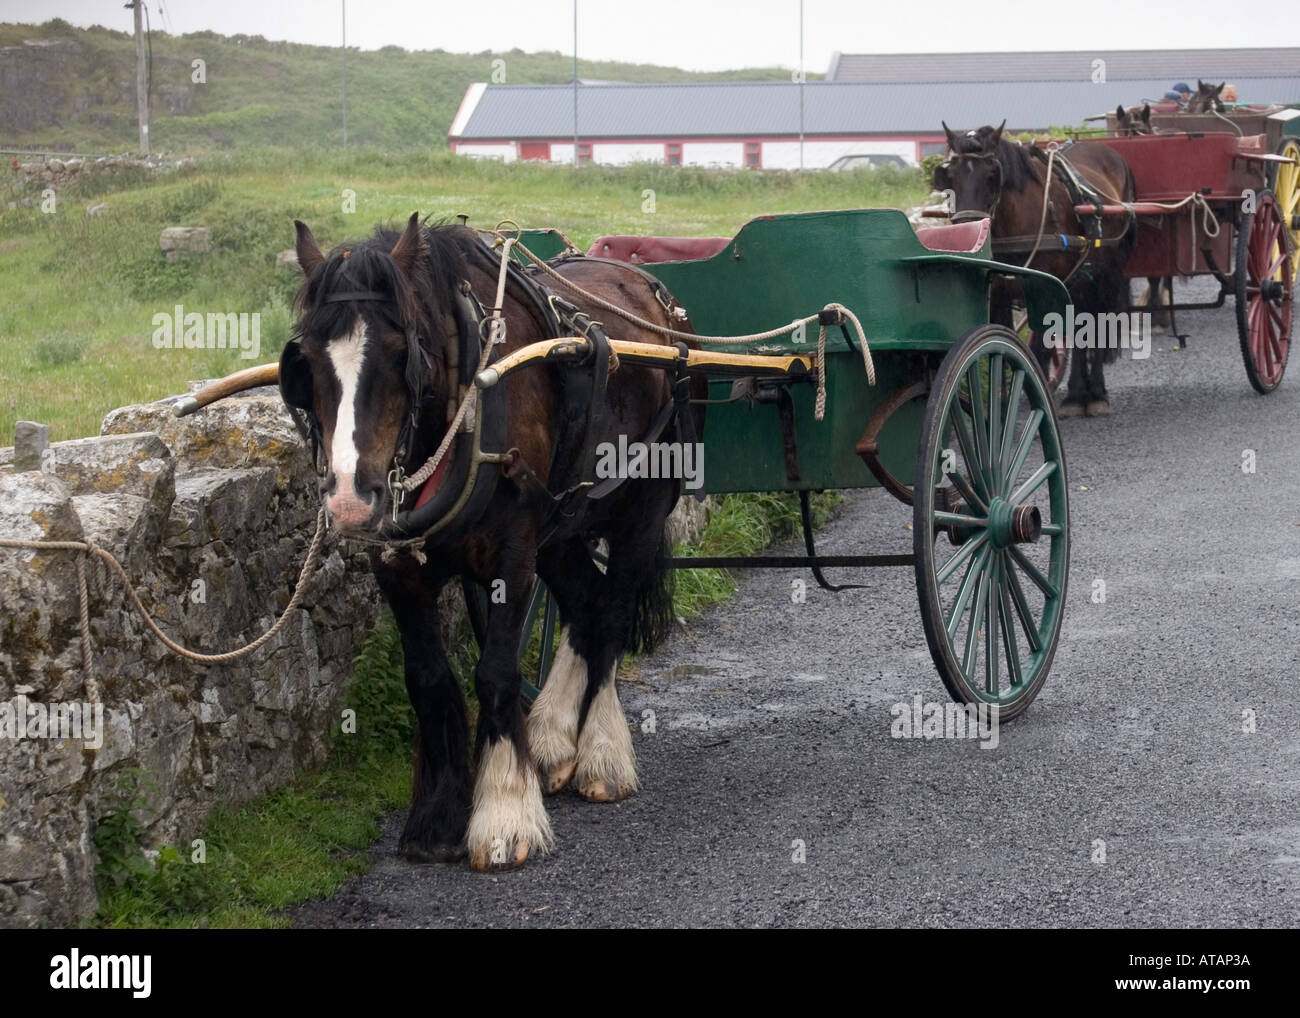 Carros tirados por caballos, Inis Mor, Irlanda Foto de stock